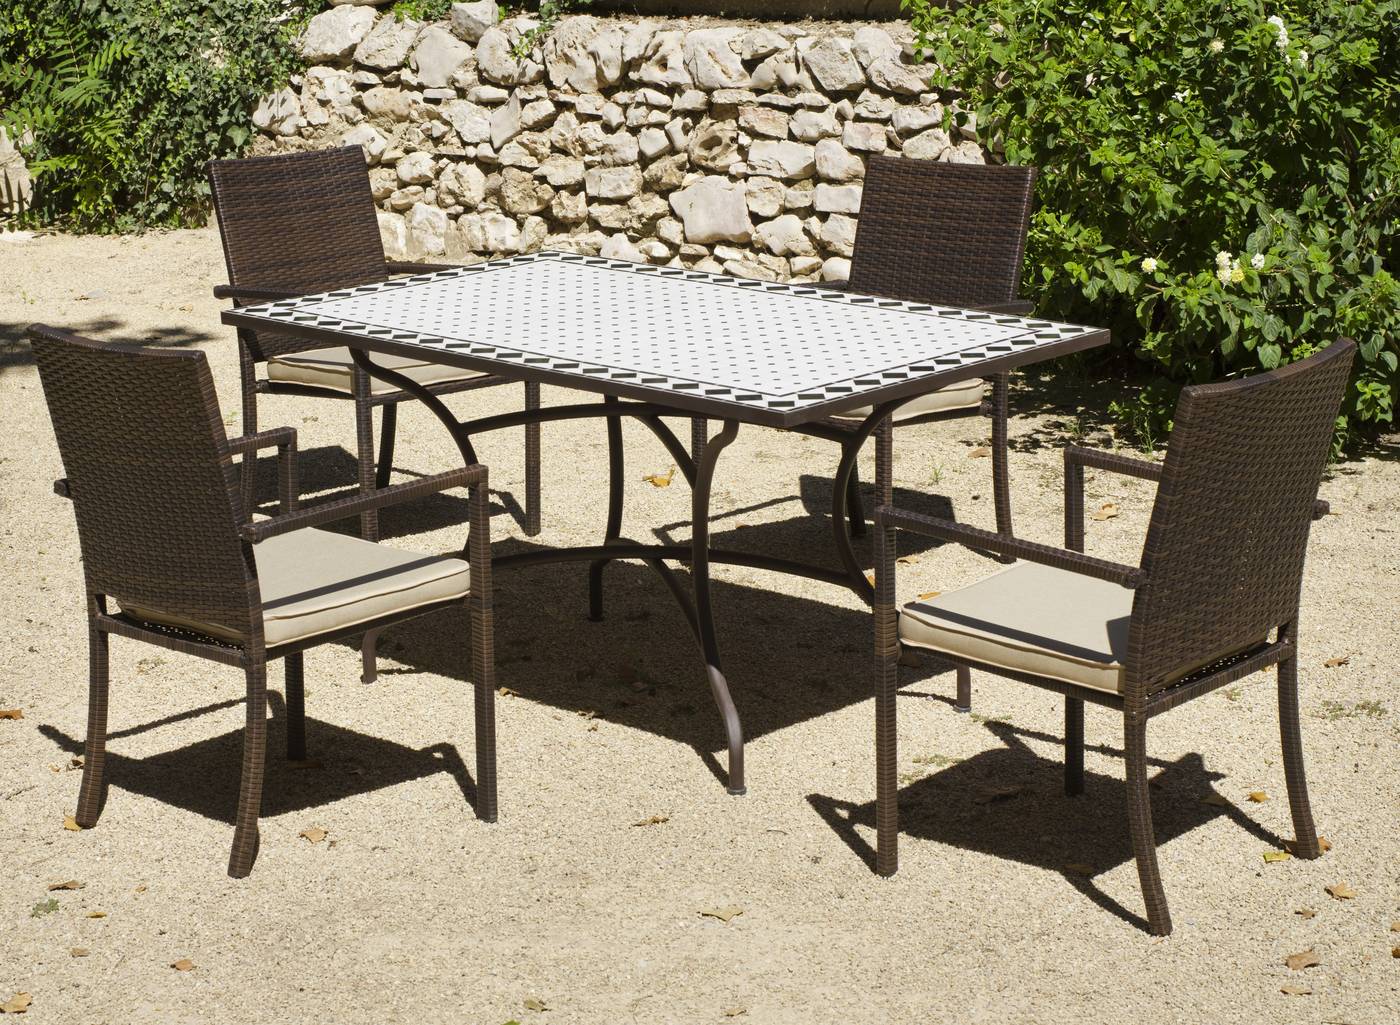 Conjunto de forja para jardín o terraza: 1 mesa de forja con panel mosaico + 4 sillones de ratán sintético + 4 cojines. Mesa válida para 6 sillones.